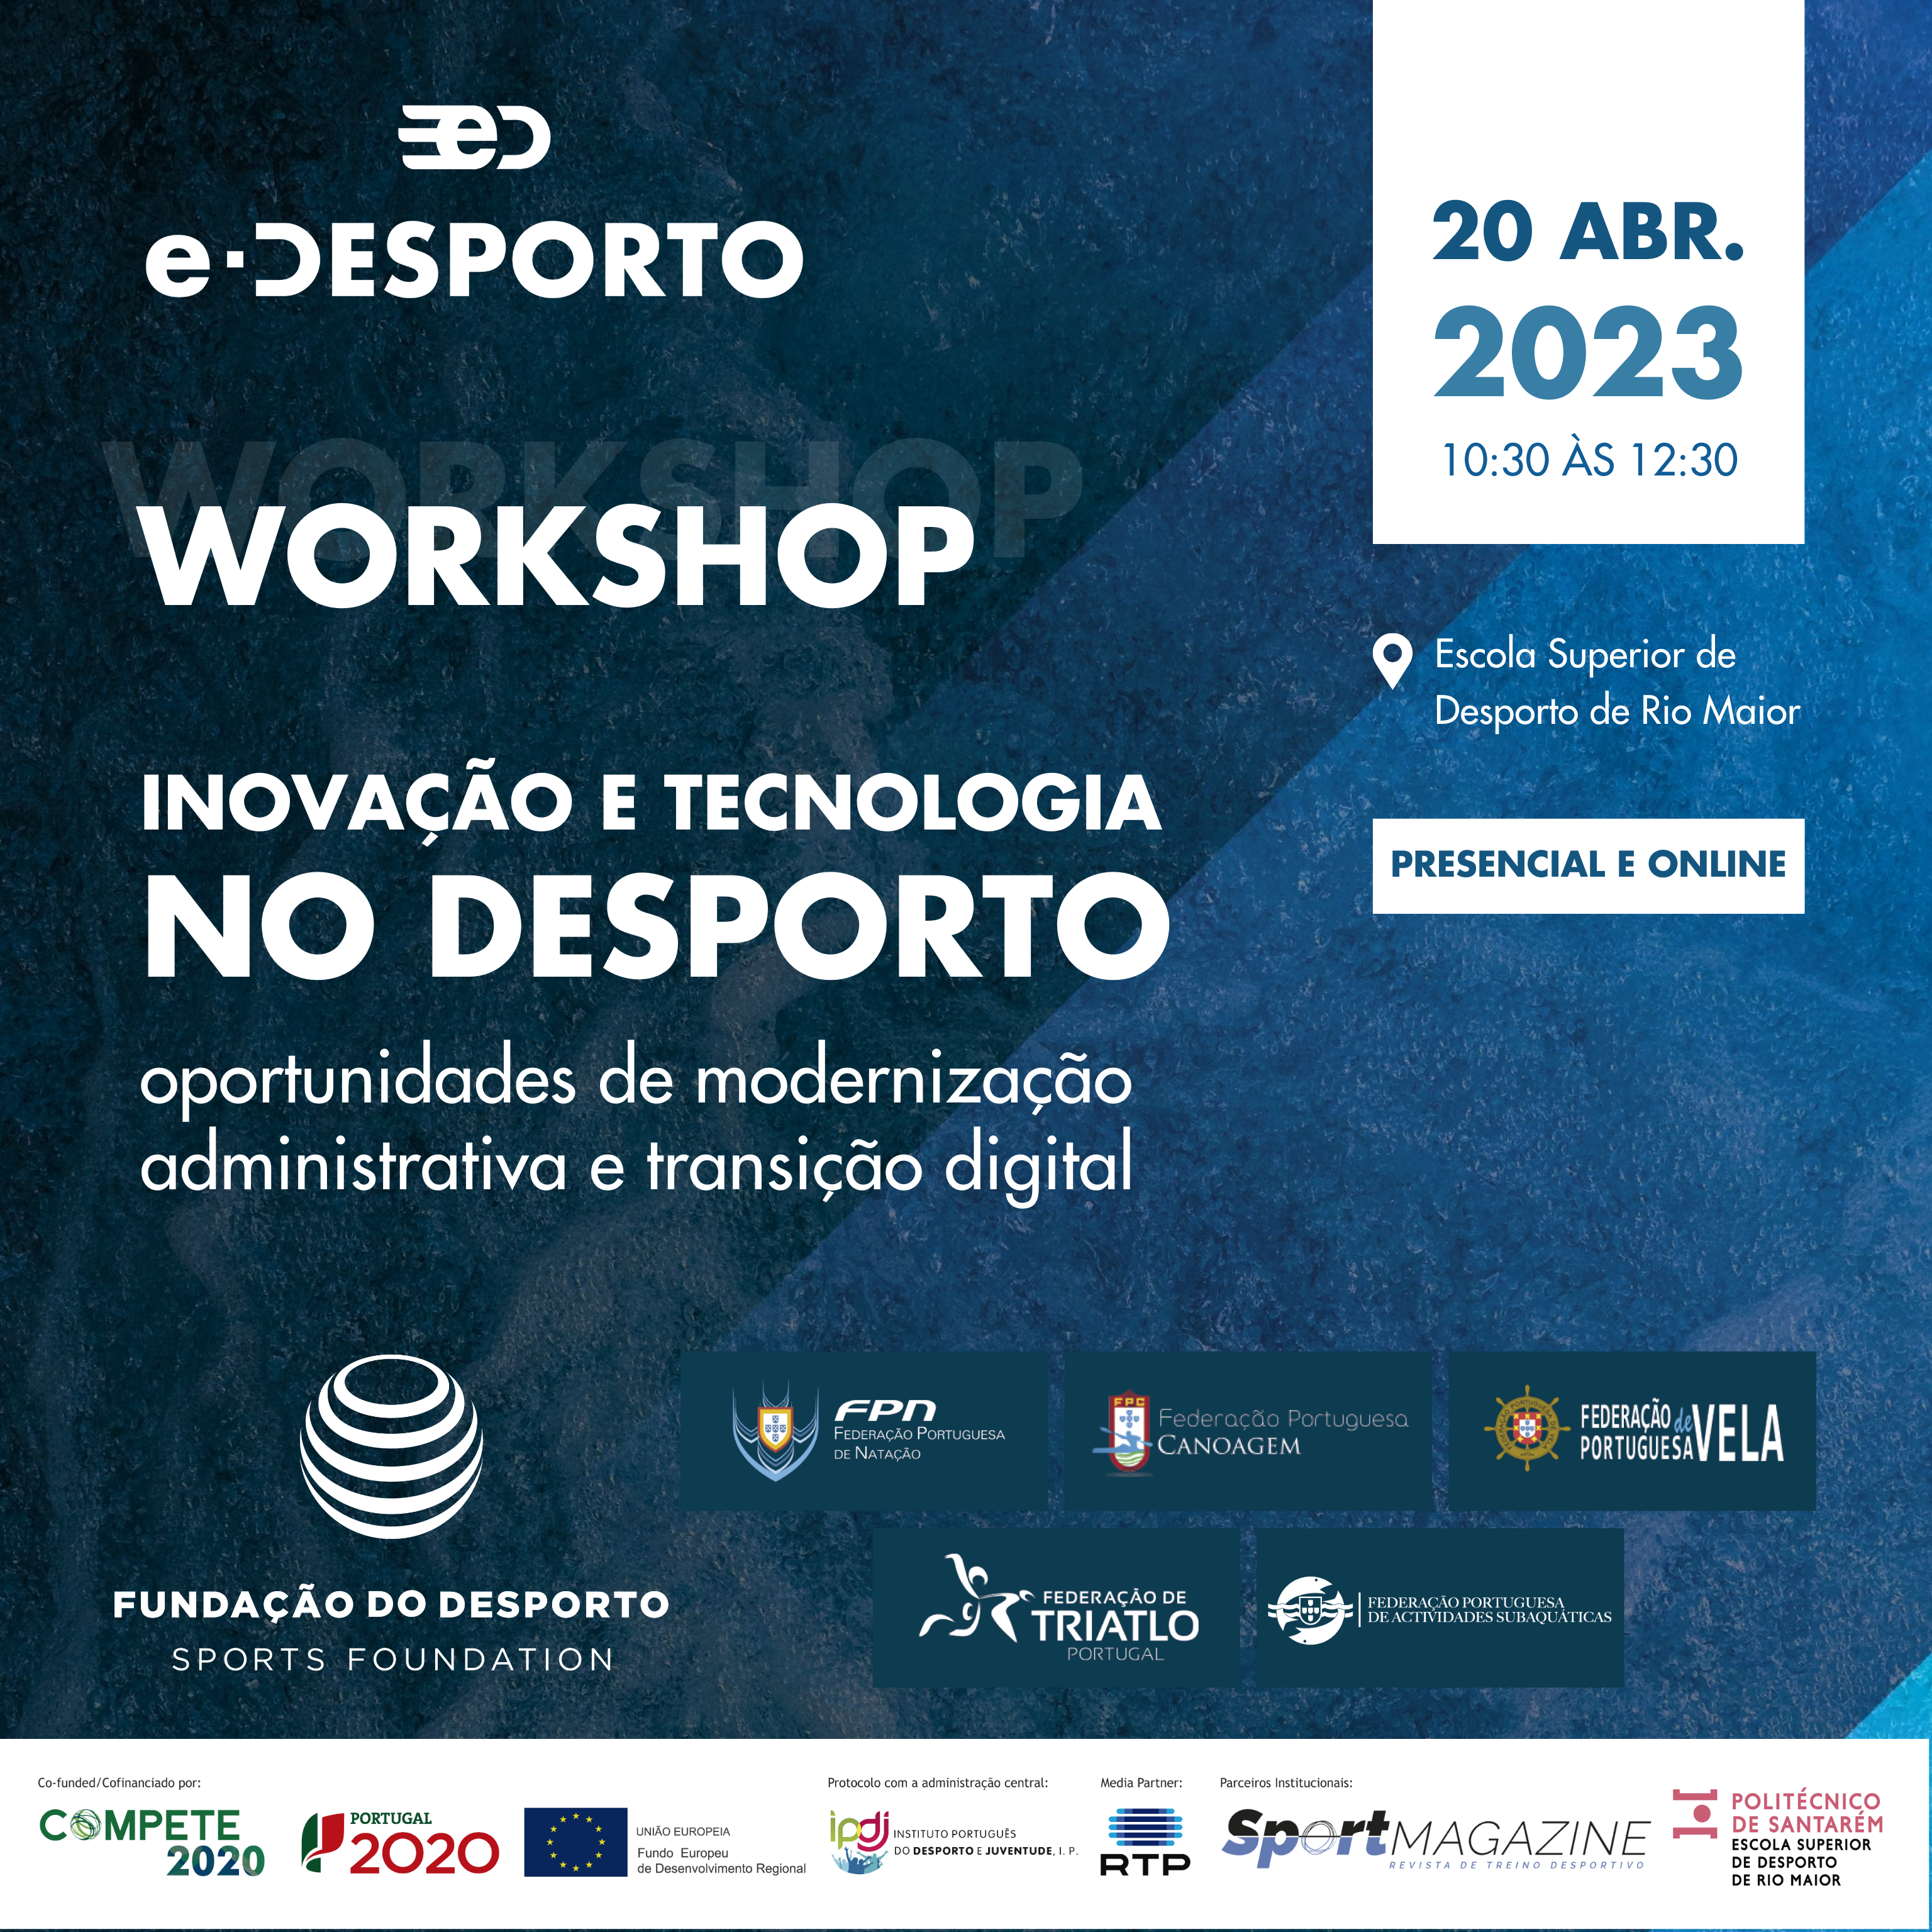 Workshop “Inovação e Tecnologia no Desporto: oportunidades de modernização administrativa e transição digital” a 20 de abril